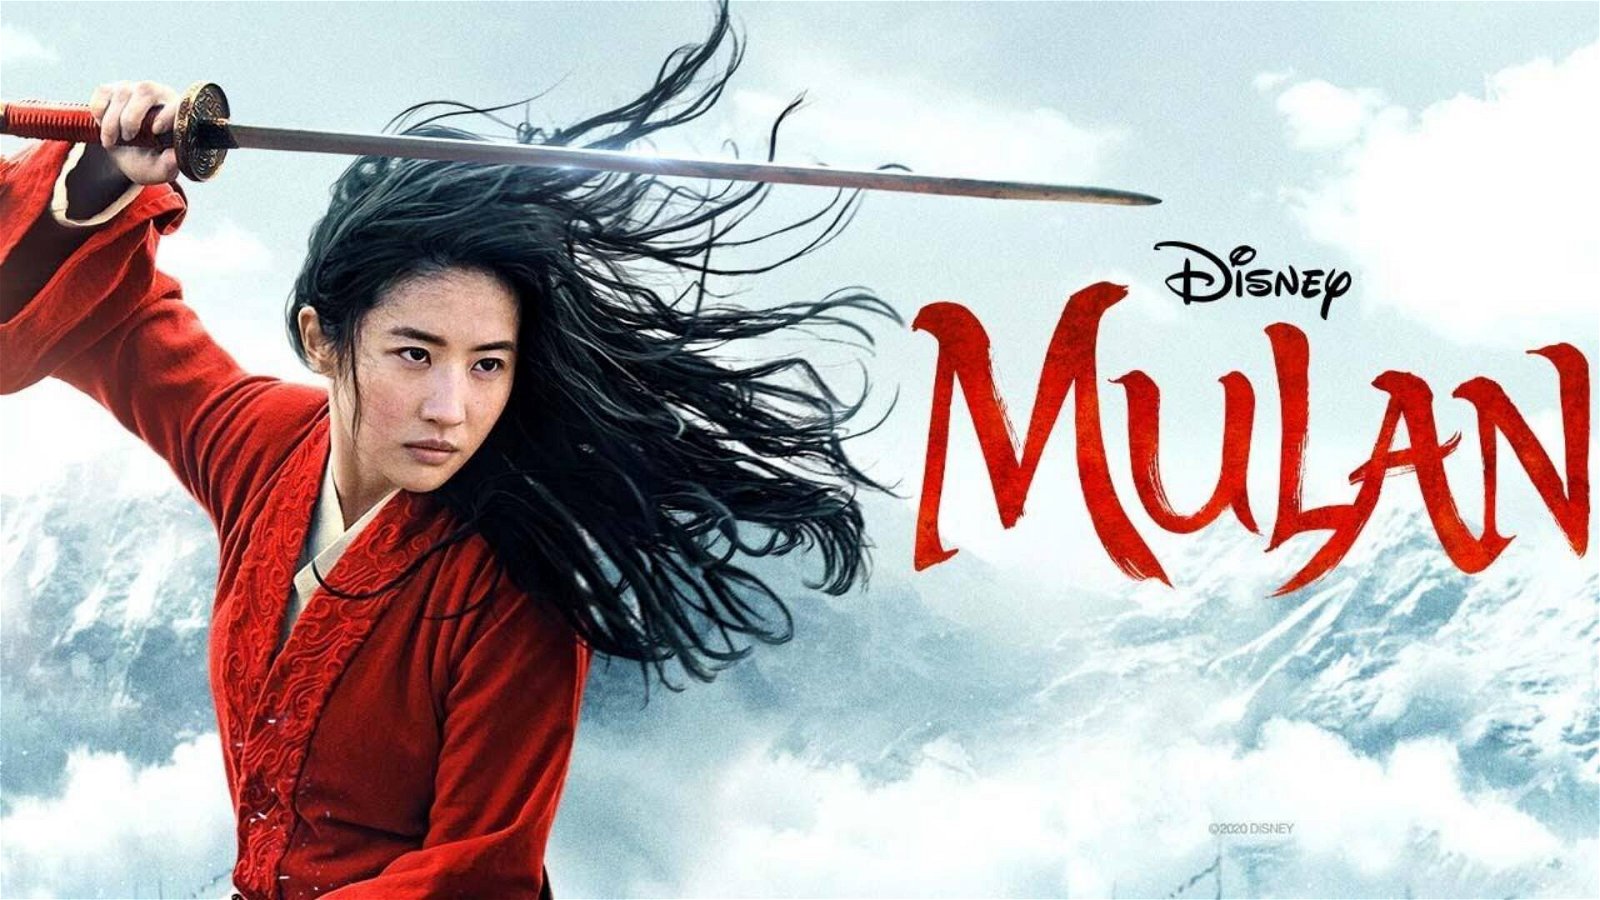 Immagine di Mulan gratis a dicembre per gli abbonati Disney+